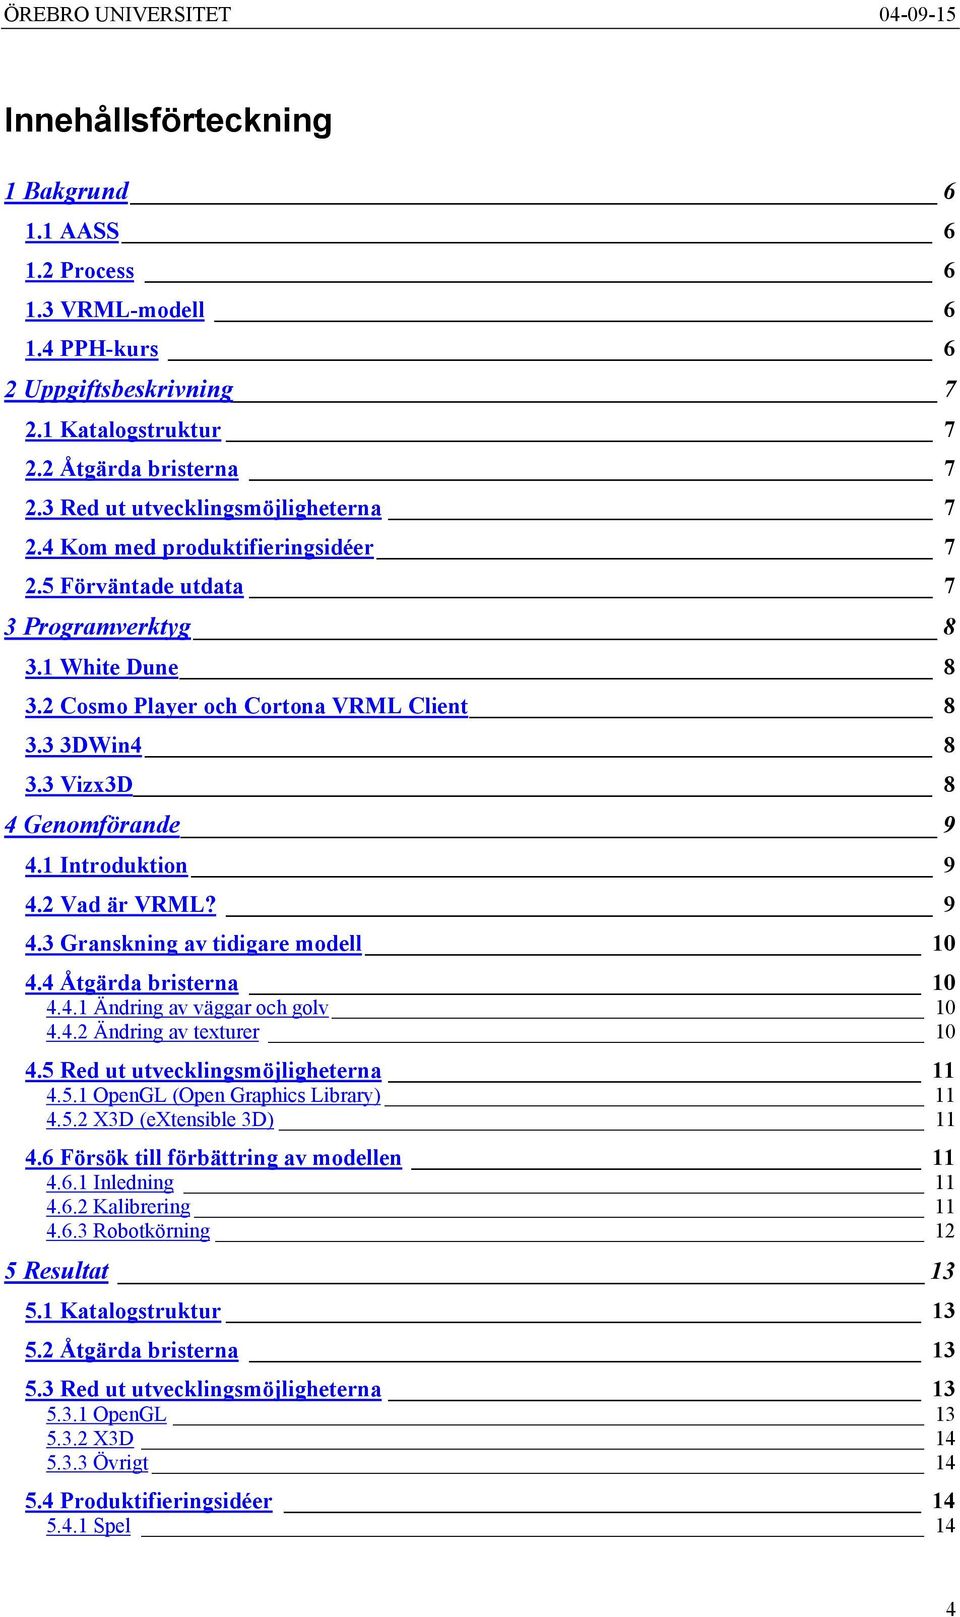 3 Vizx3D 8 4 Genomförande 9 4.1 Introduktion 9 4.2 Vad är VRML? 9 4.3 Granskning av tidigare modell 10 4.4 Åtgärda bristerna 10 4.4.1 Ändring av väggar och golv 10 4.4.2 Ändring av texturer 10 4.